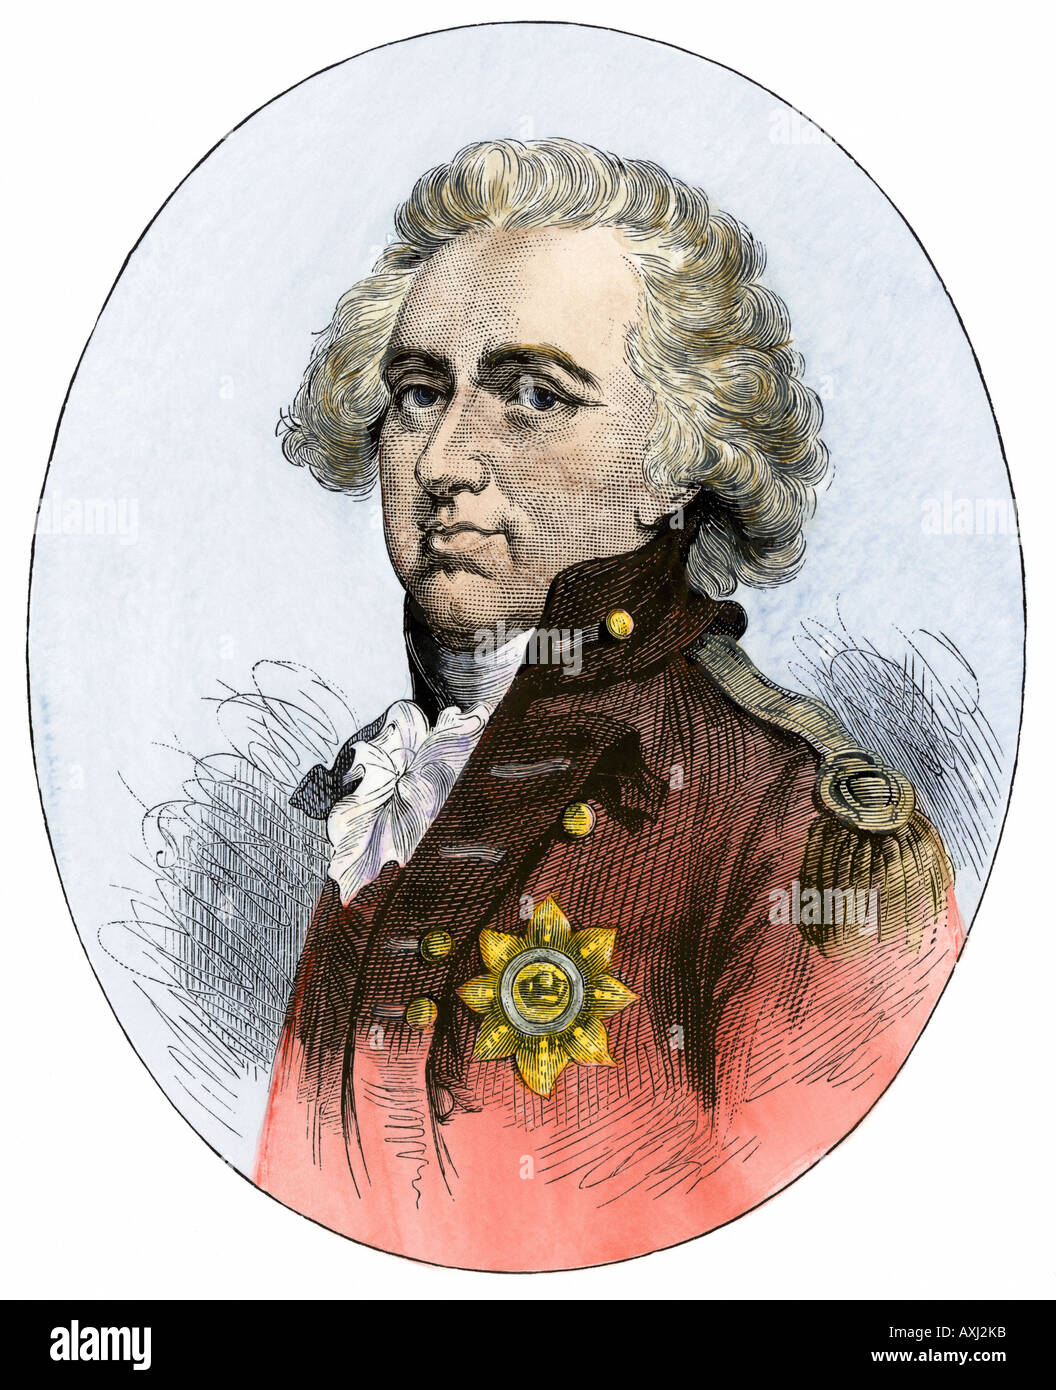 Henry Clinton commandant en chef britannique pendant la Révolution américaine. À la main, gravure sur bois Banque D'Images